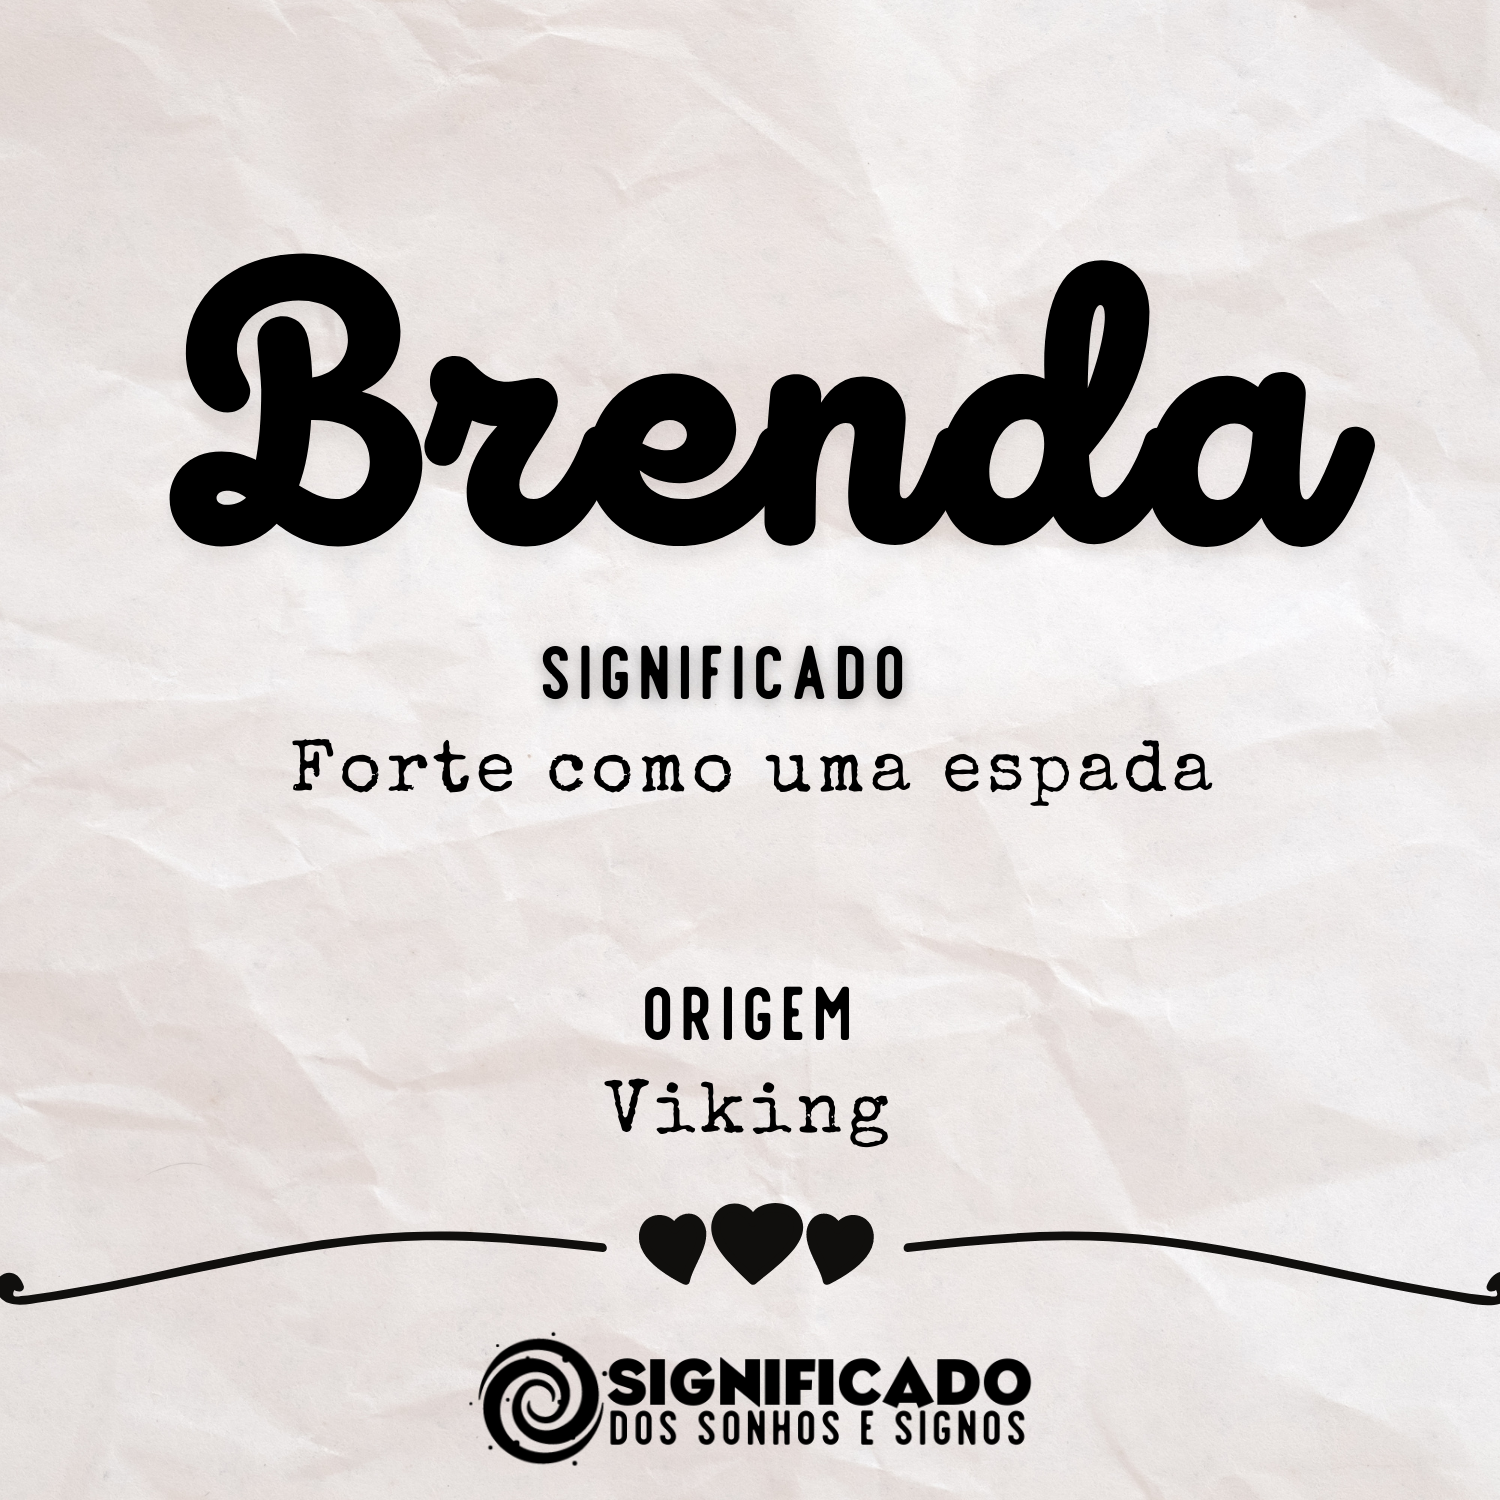  Brenda – Betekenis van die naam, oorsprong en gewildheid